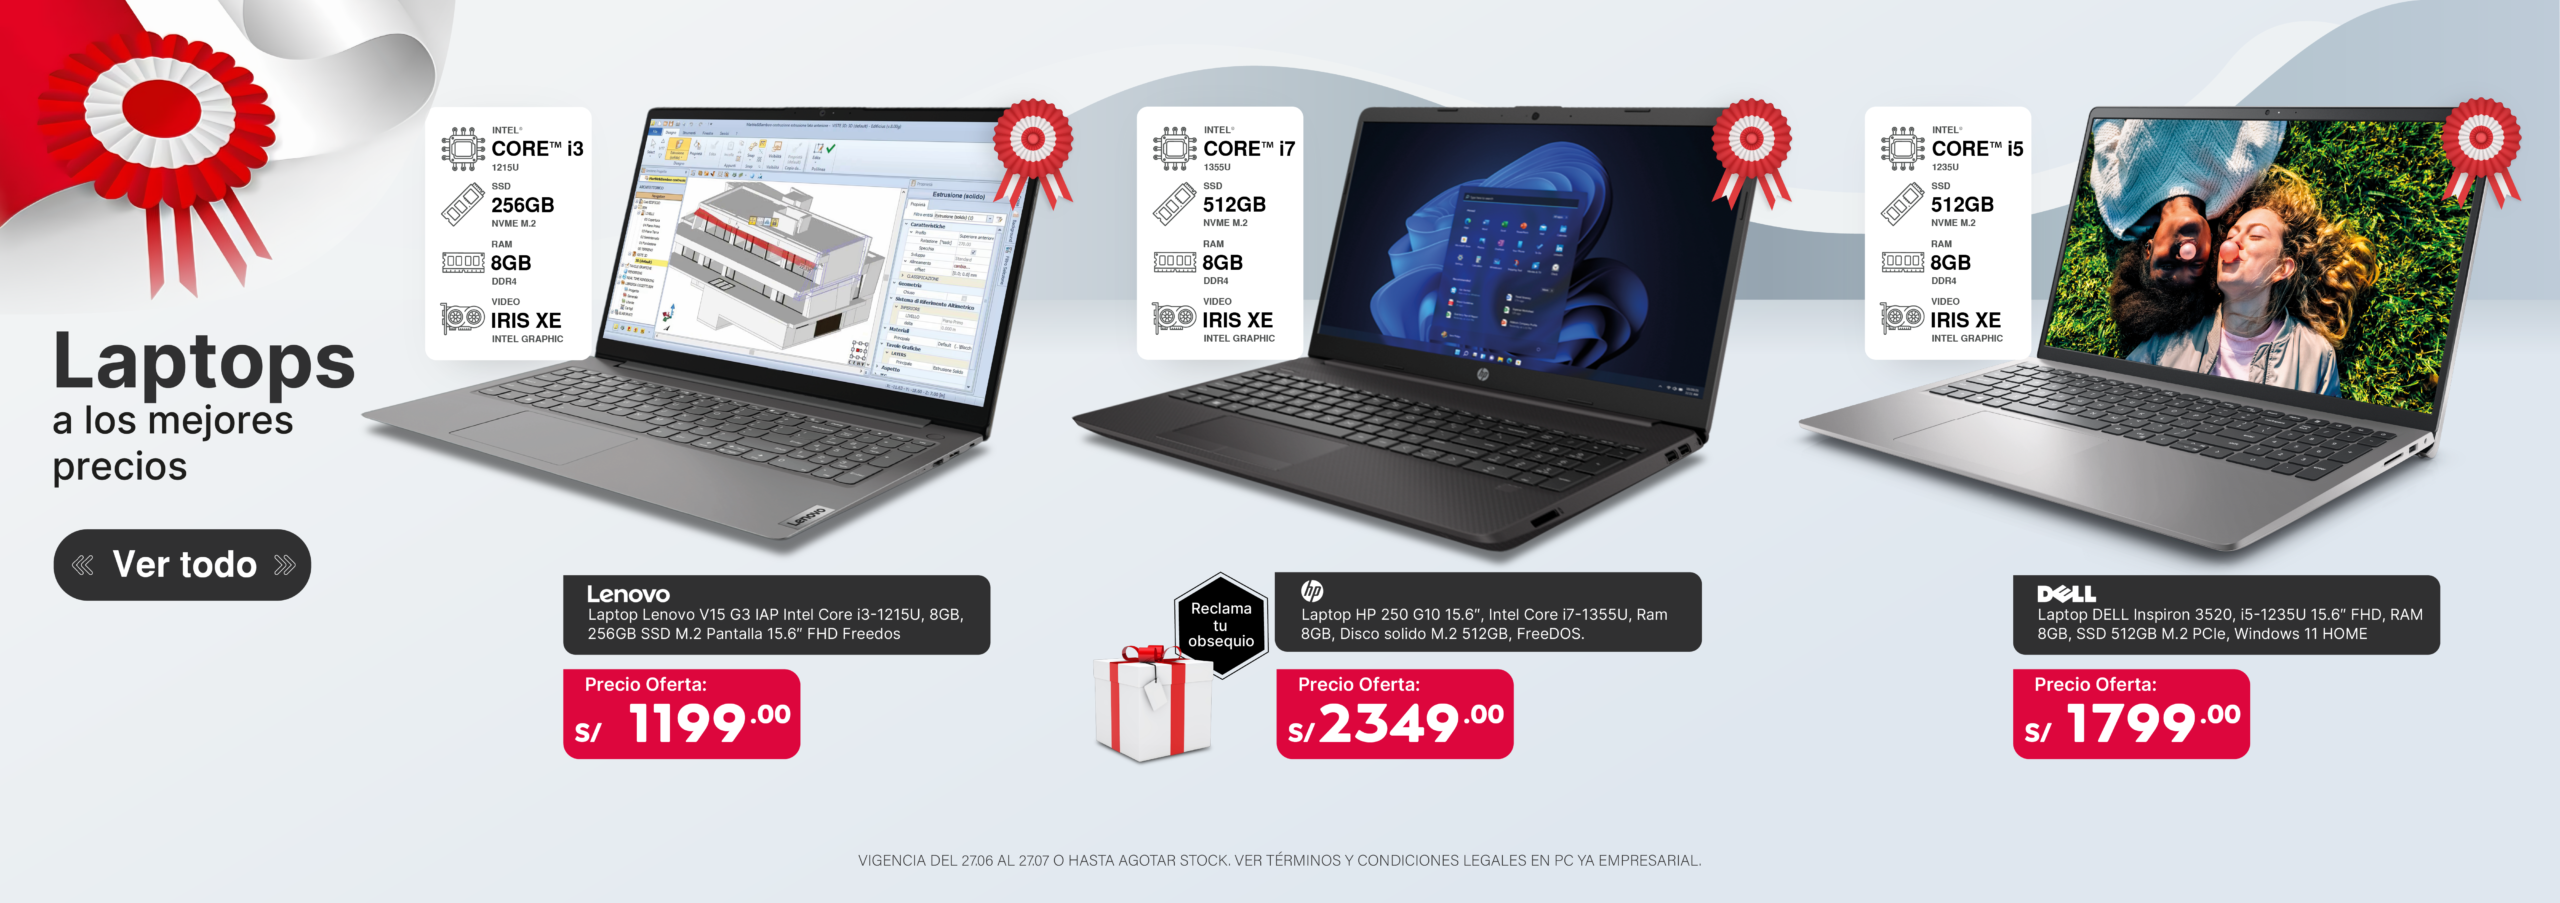 Banner laptops precio promocional